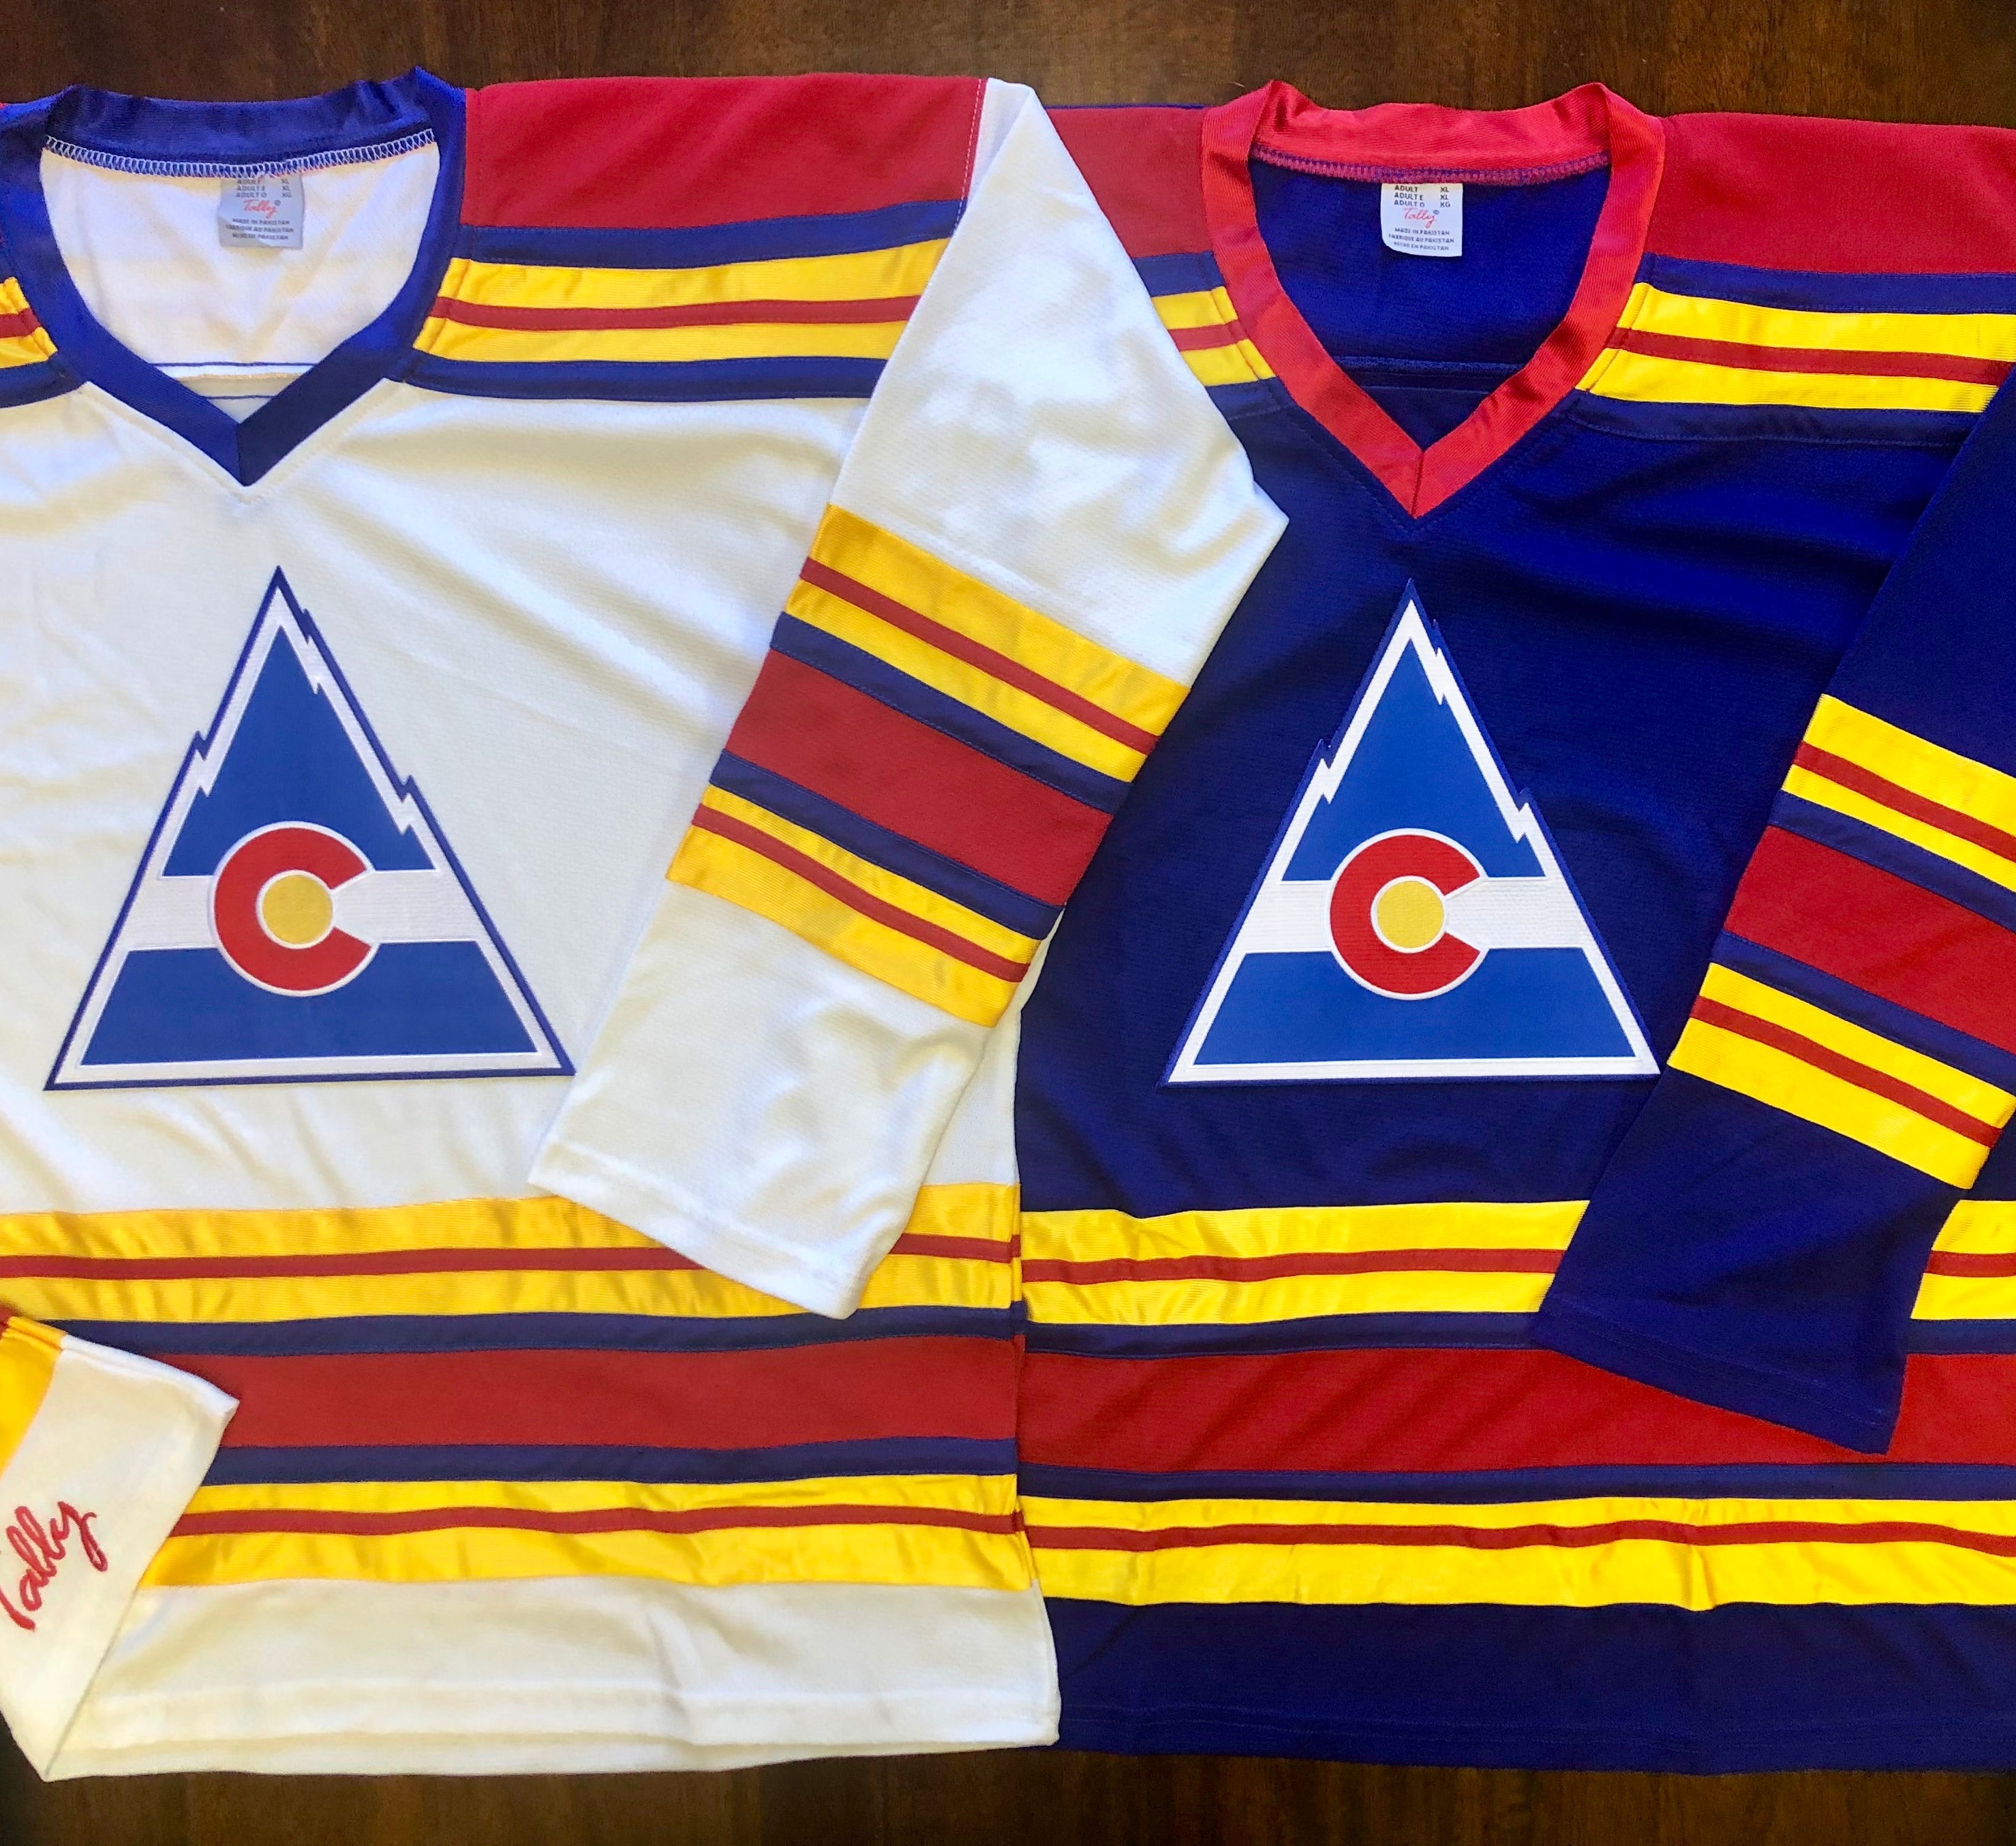 Custom Colorado Hockey Jerseys - Order Any Quantity